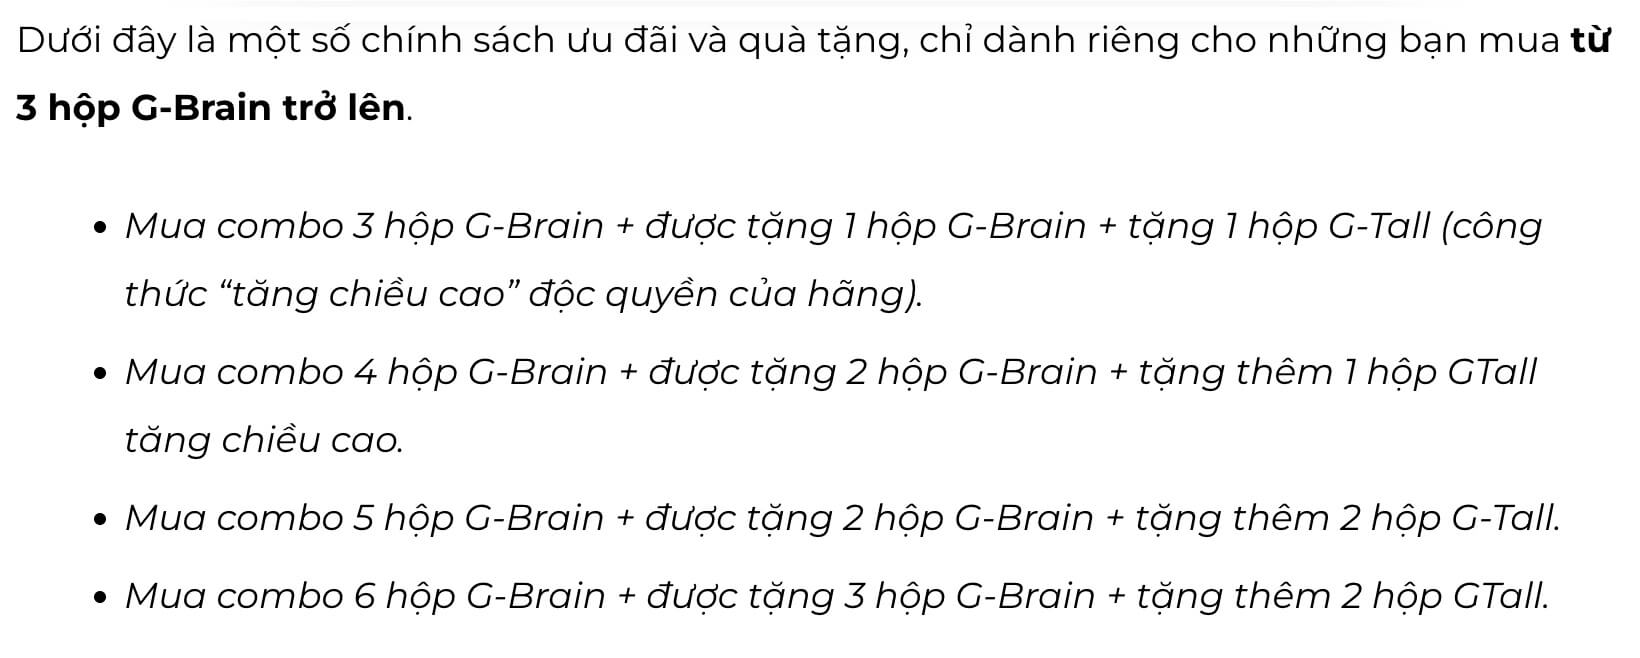 Cốm trí não G-Brain có bán ở hiệu thuốc không hình 24